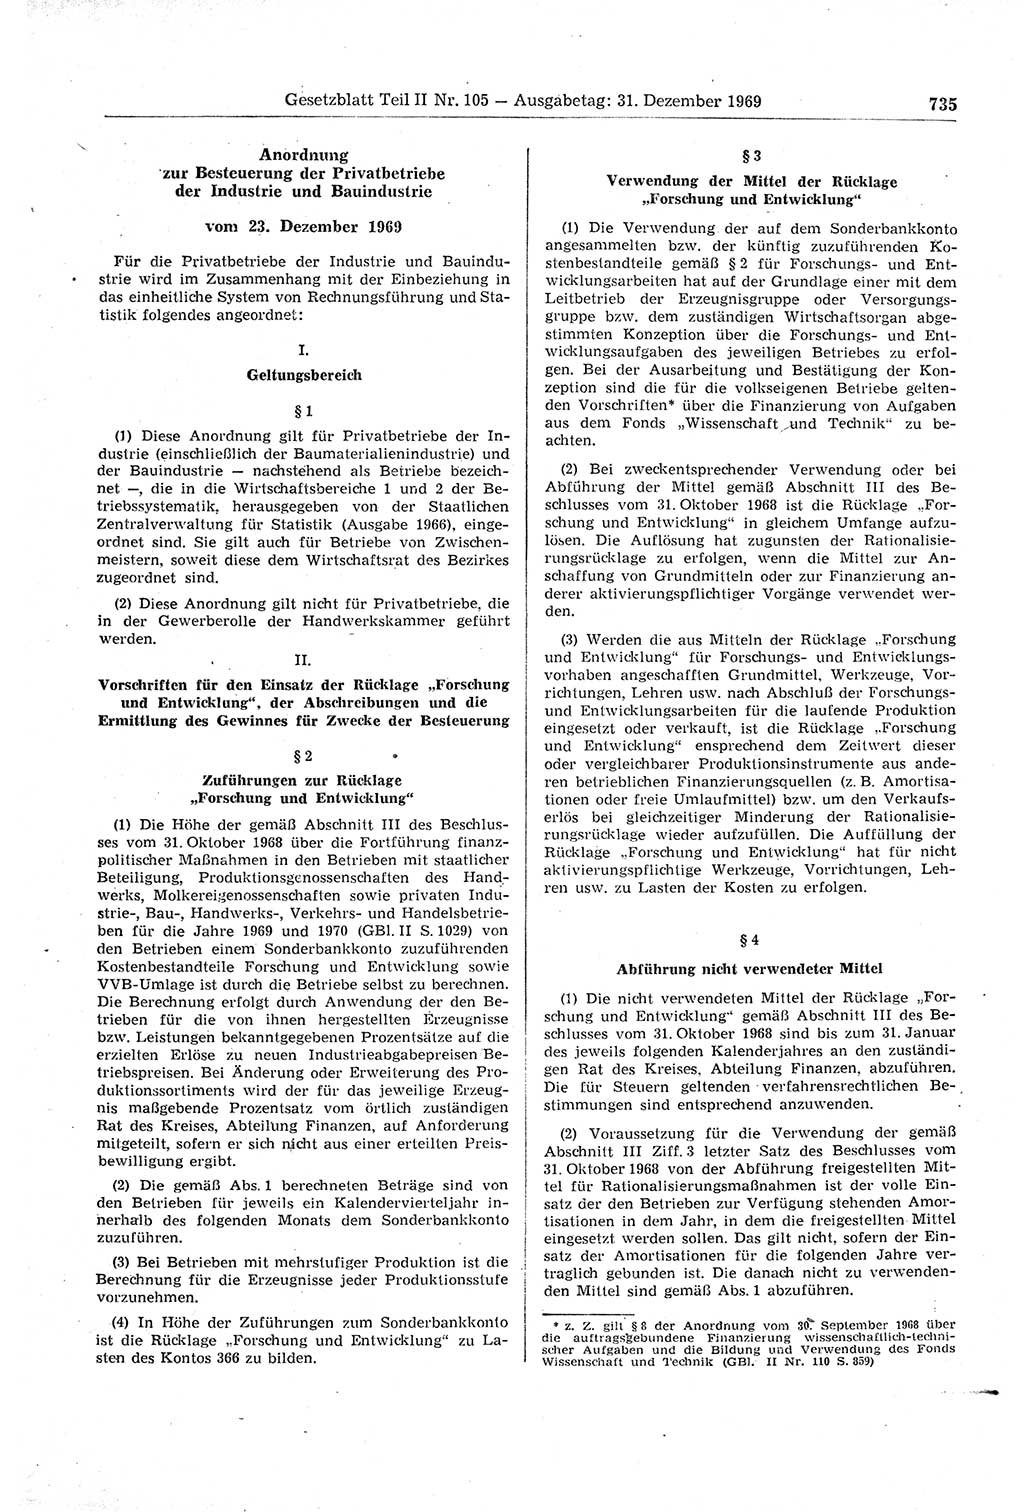 Gesetzblatt (GBl.) der Deutschen Demokratischen Republik (DDR) Teil ⅠⅠ 1969, Seite 735 (GBl. DDR ⅠⅠ 1969, S. 735)